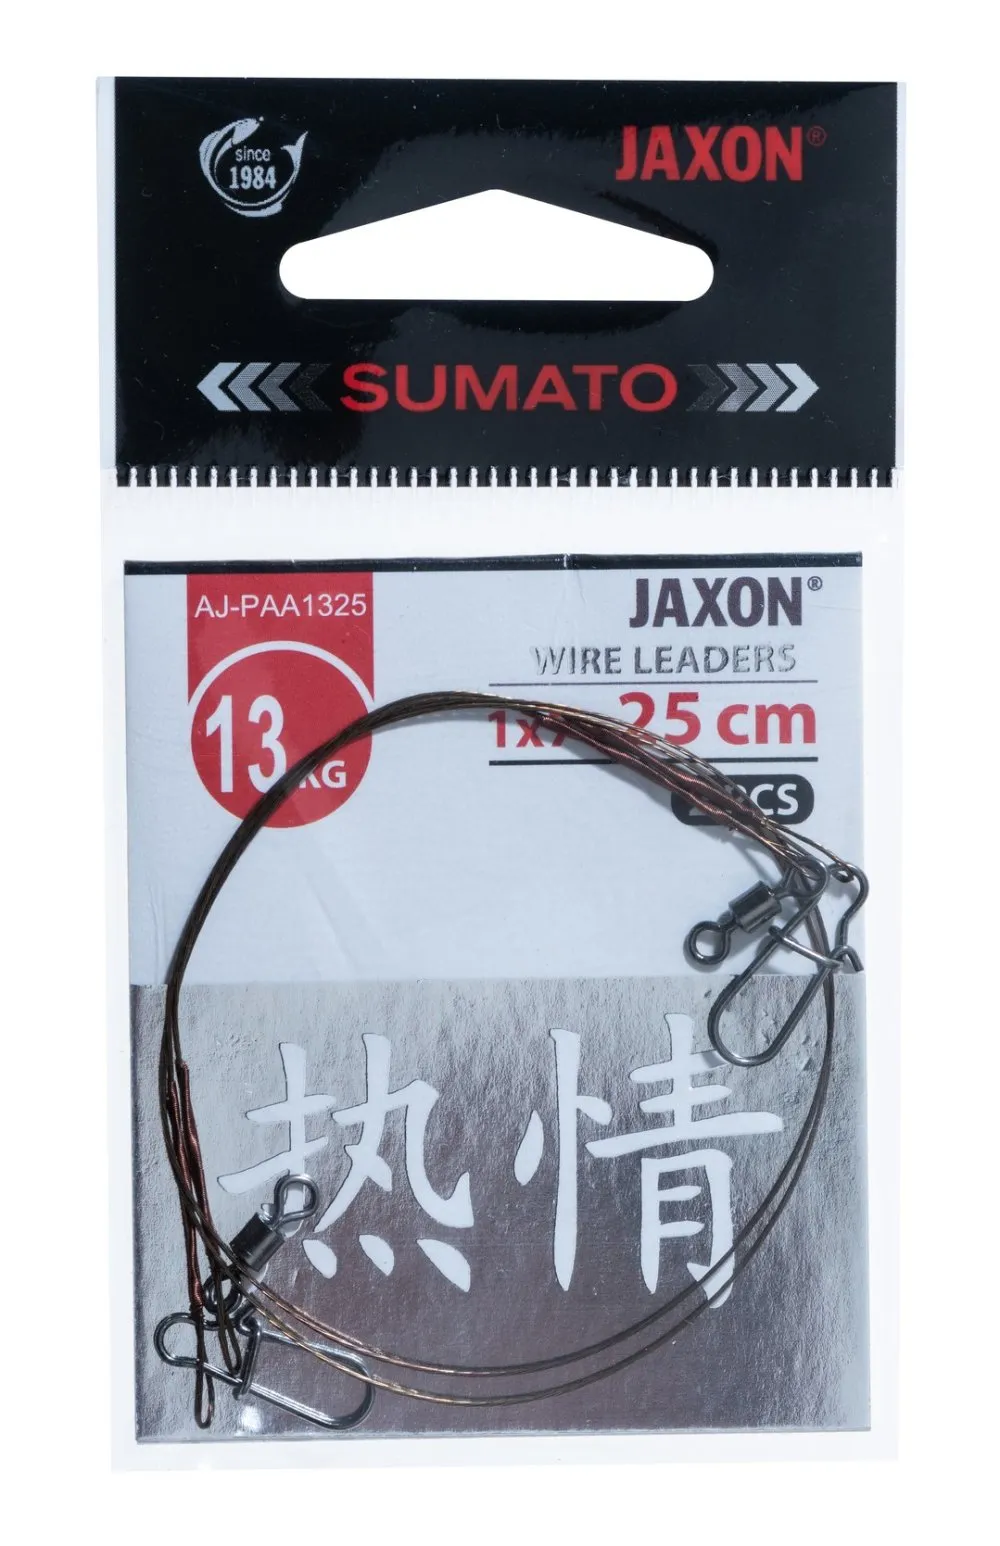 JAXON SUMATO WIRE LEADERS 9kg 25cm